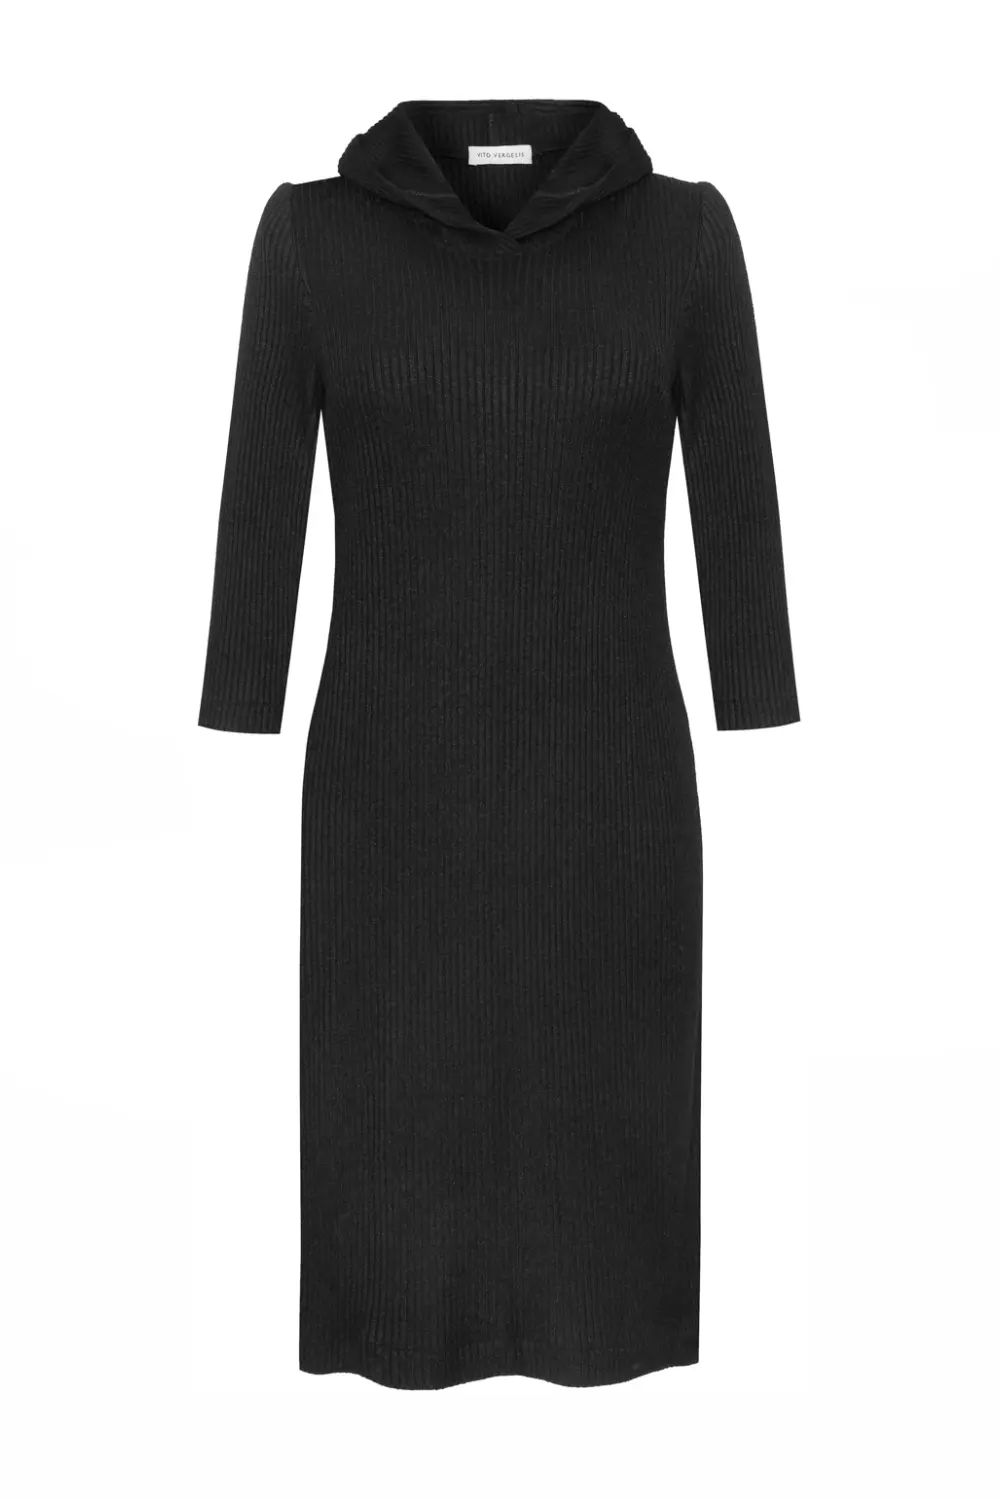 czarna sukienka z kapturem sweterkowa polska marka Vito Vergelis dzianinowa sukienka codzienna